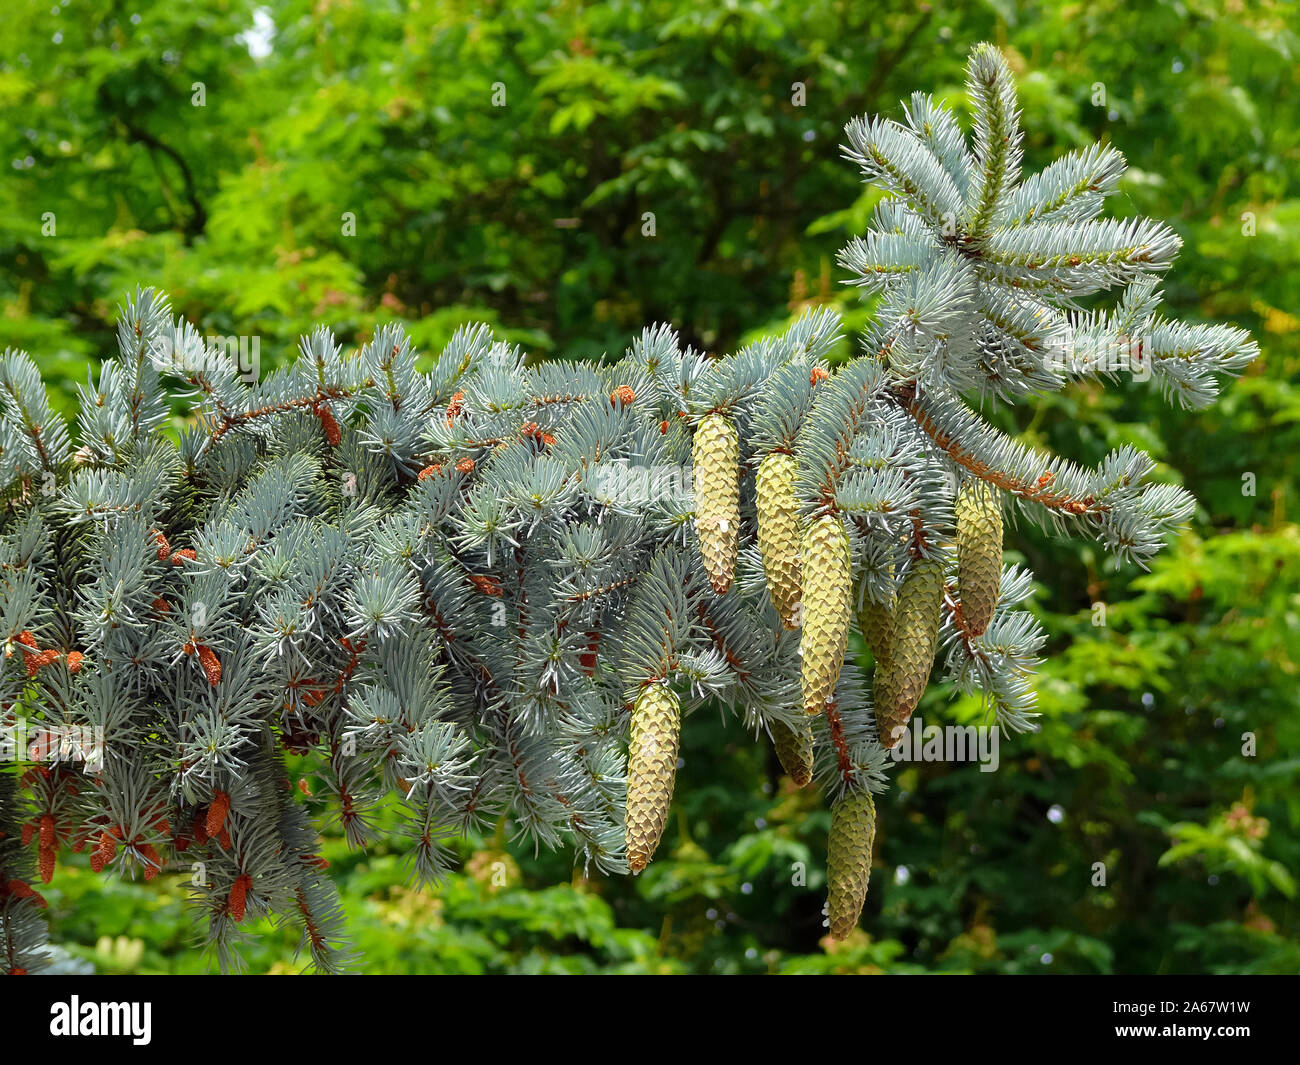 Blue spruce, Stech-Fichte, Blau-Fichte, Picea pungens, ezüstfenyő Stock Photo